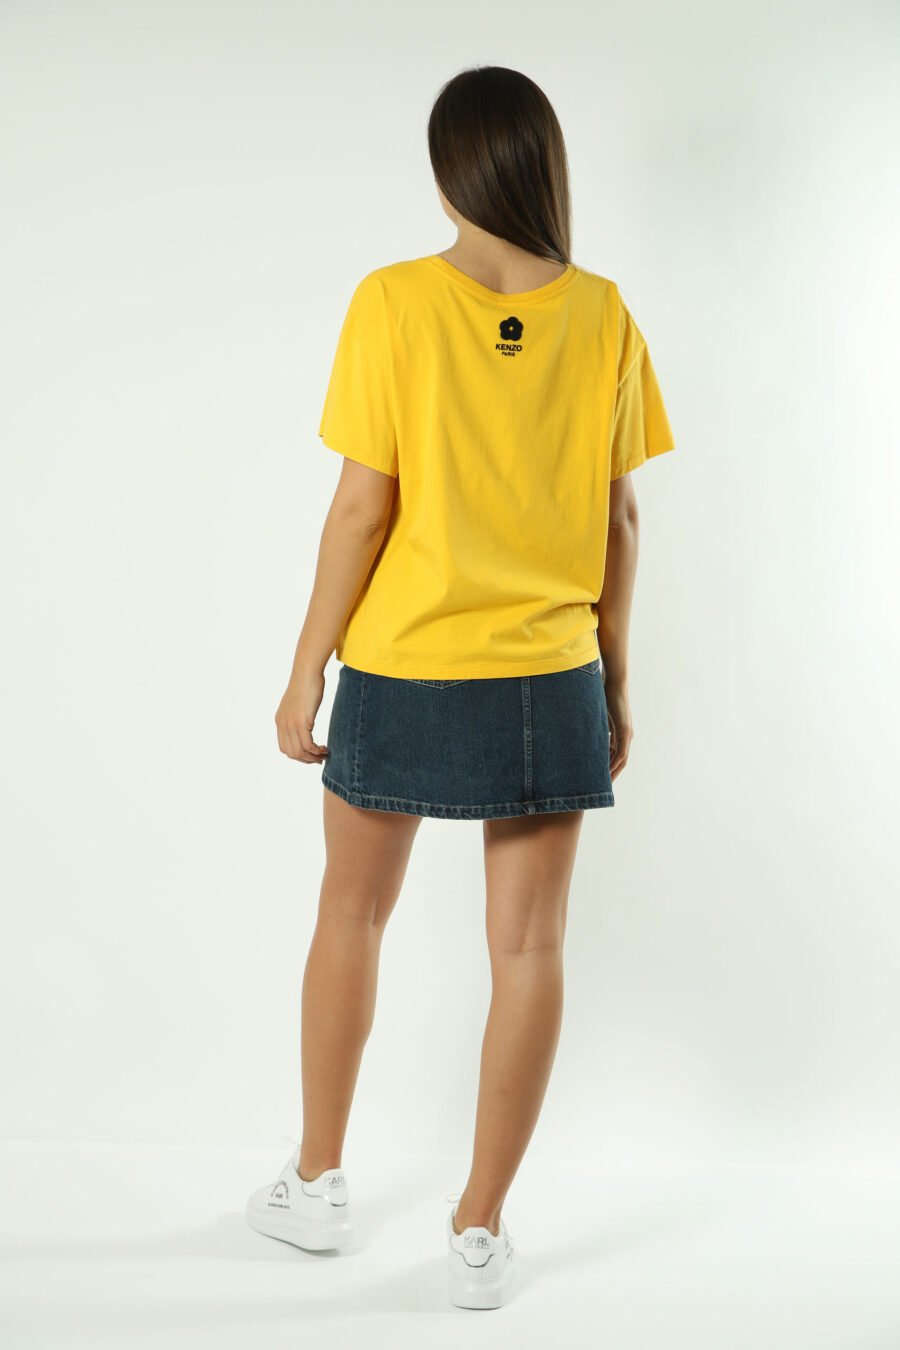 T-shirt amarela com maxilogo de elefante - Fotos 1314